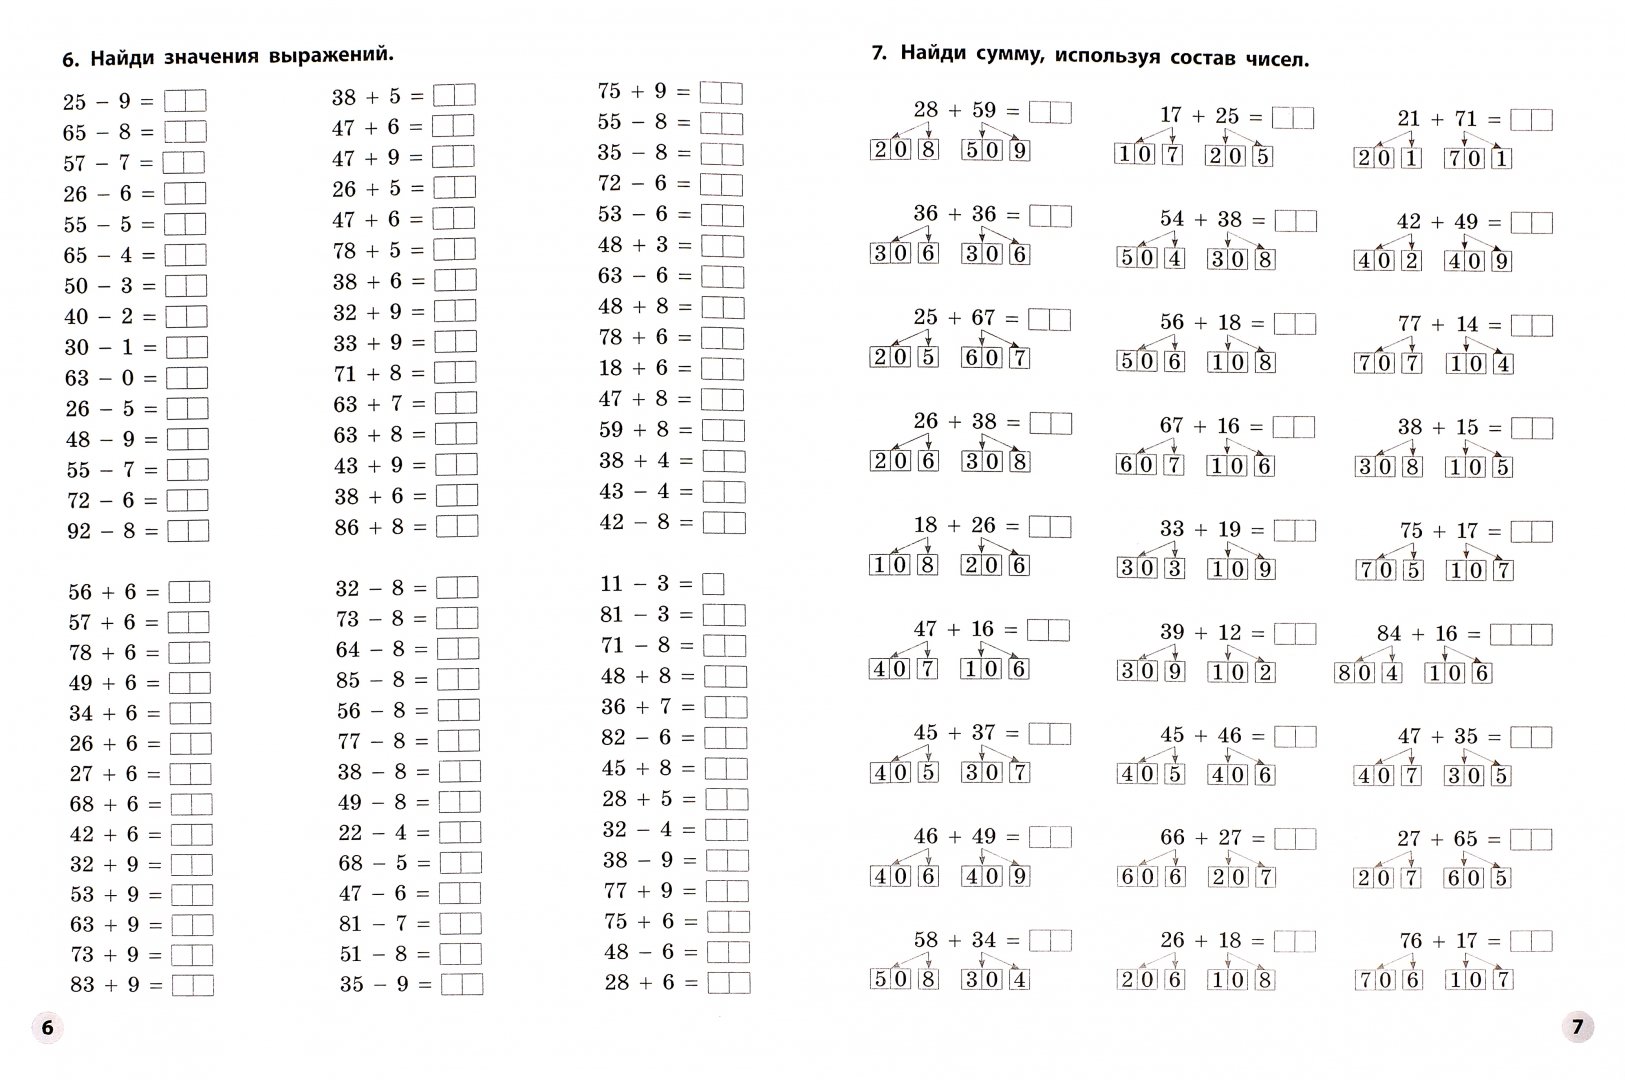 Математические примеры на сложение и вычитание. Тренажёр по математике 2 класс сложение и вычитание в пределах 100. Уравнения по математике 2 класс на сложение и вычитание в пределах 100. Задачи на сложение и вычитание в пределах 100. Карточки по математике 2 класс сложение и вычитание в пределах 100.